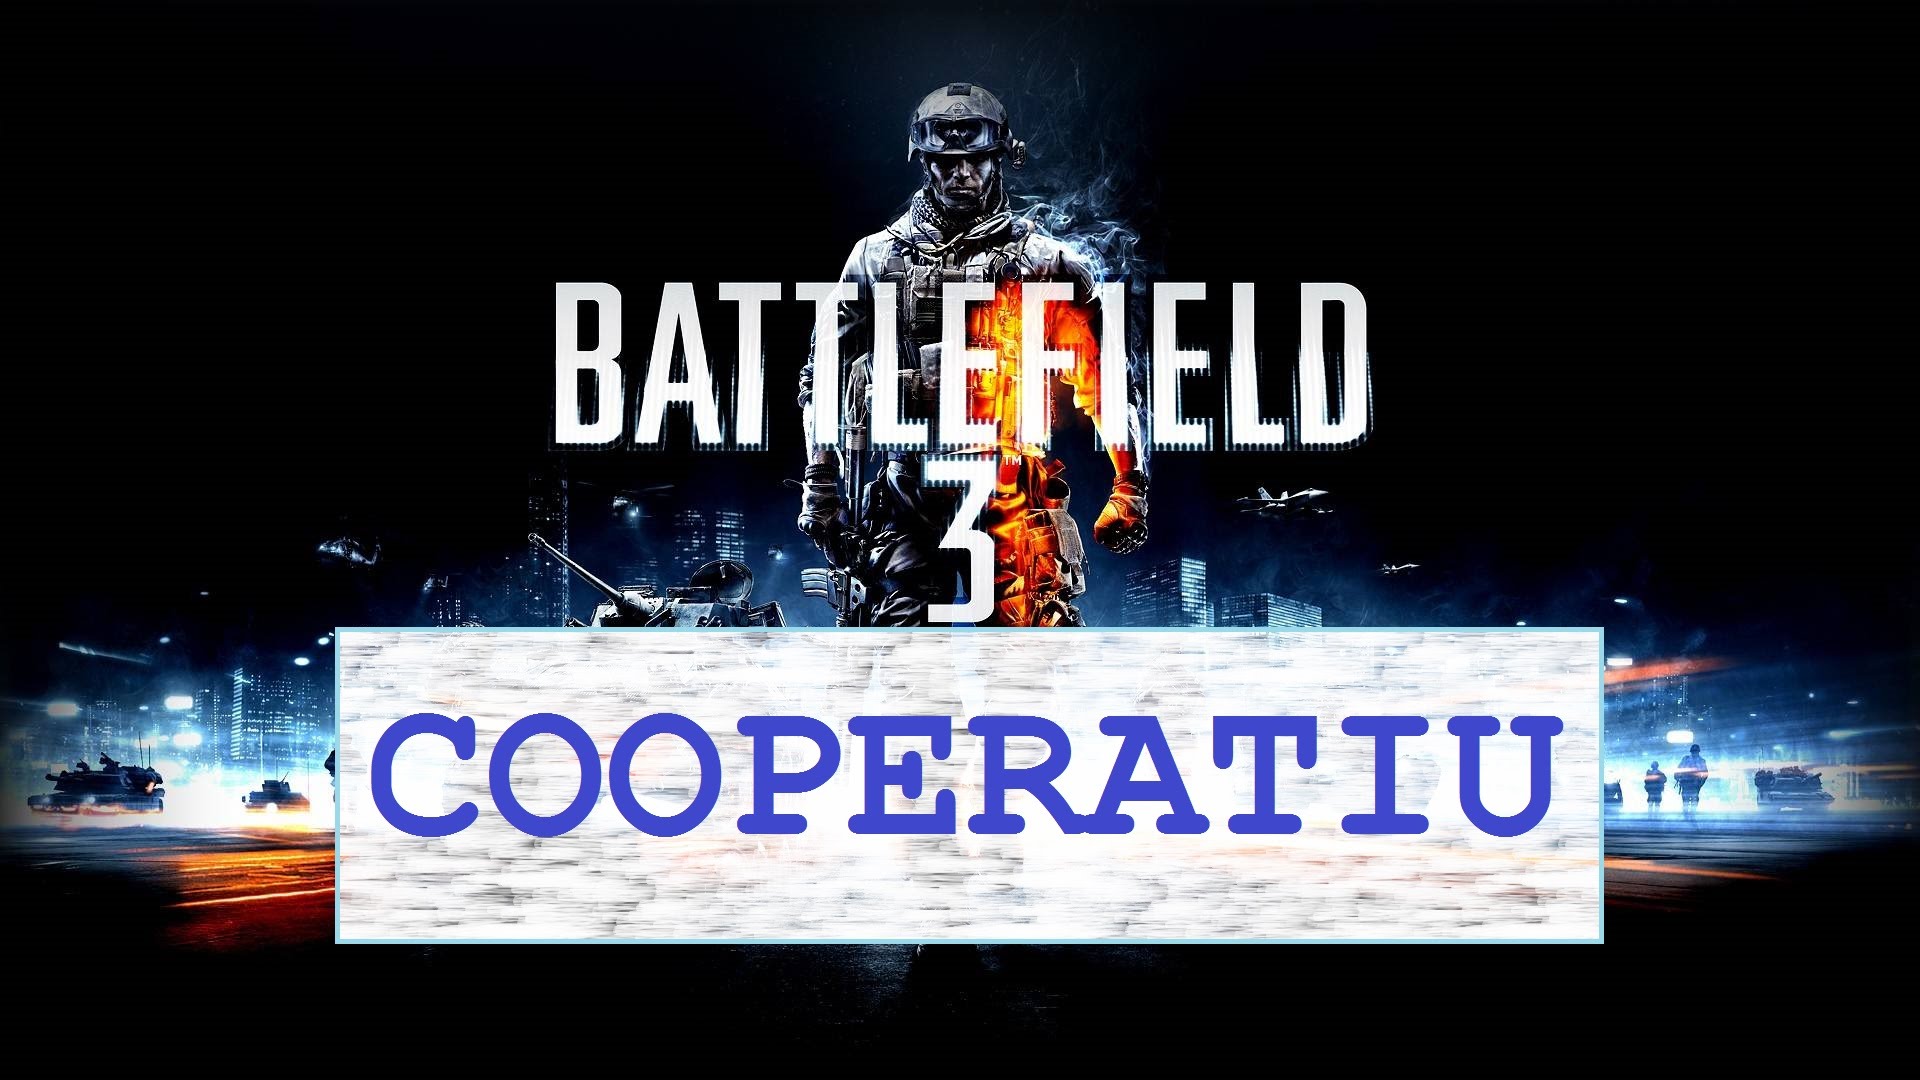 Battlefield 3 - Cooperatiu - 2a Missió de Ut Música